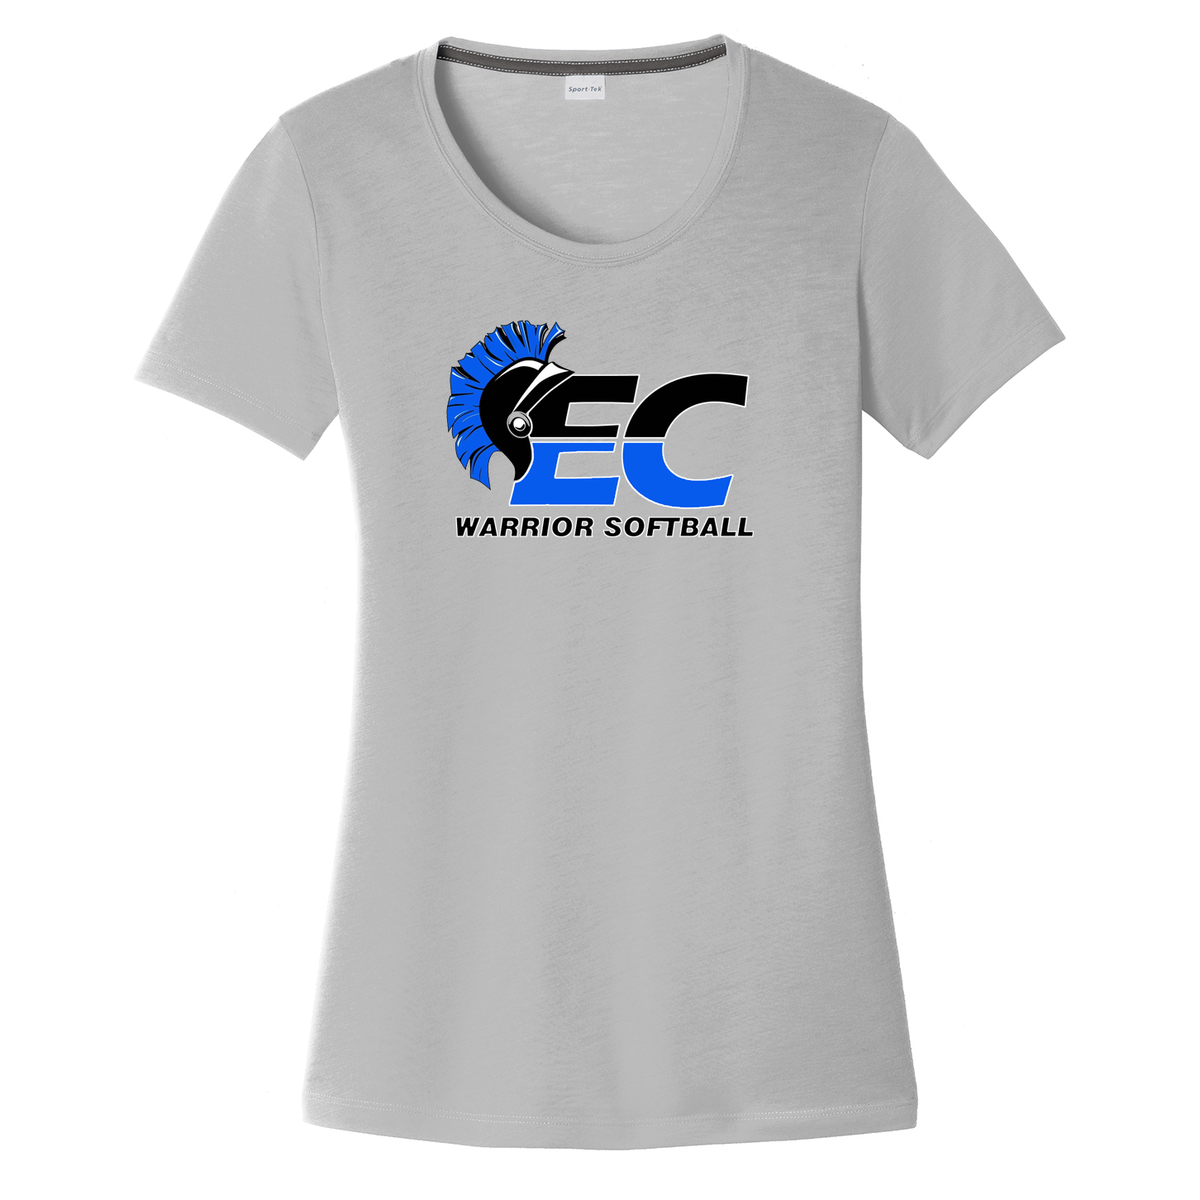 Warriors Softball Women's CottonTouch Performance T-Shirt